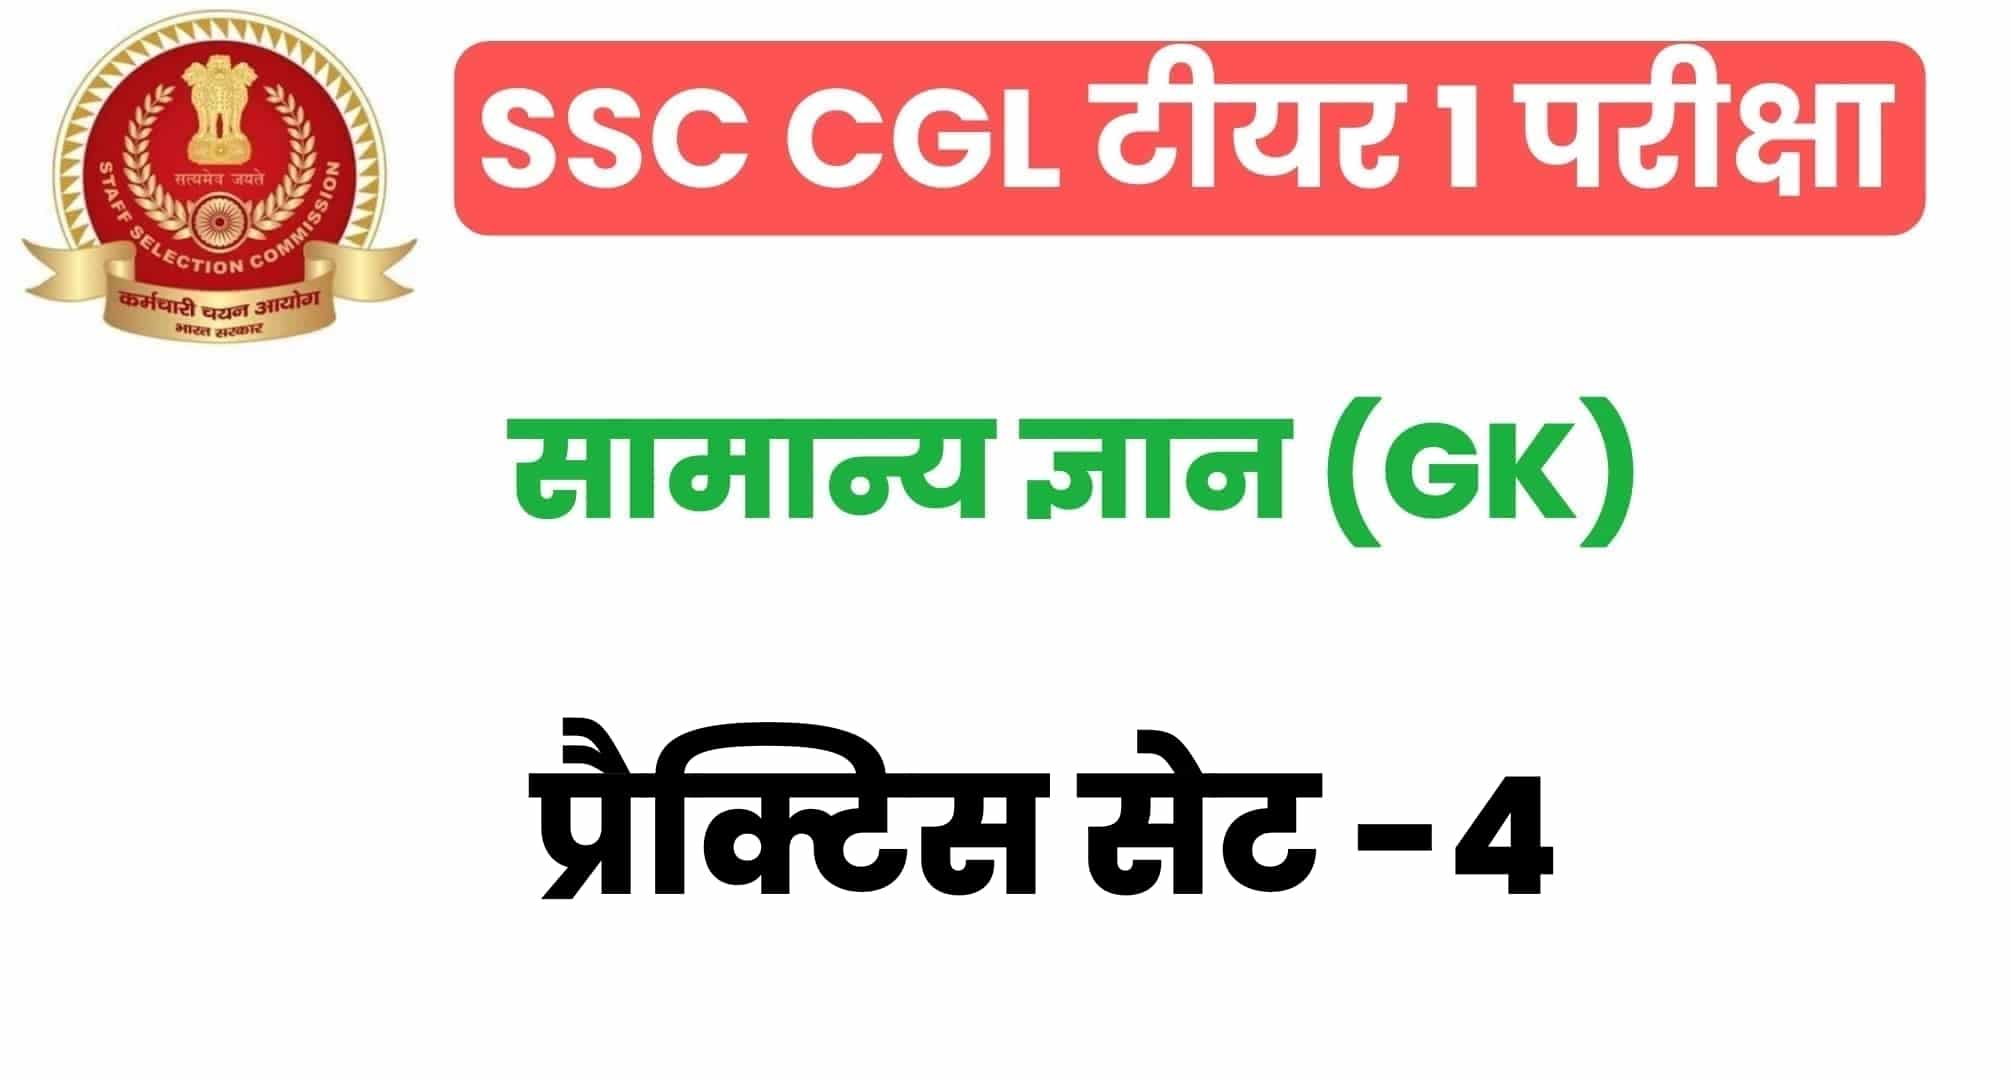 SSC CGL GK/GS प्रैक्टिस सेट 4 :  सामान्य ज्ञान के 25 अतिमहत्वपूर्ण प्रश्न, परीक्षा से पहले अध्ययन करें